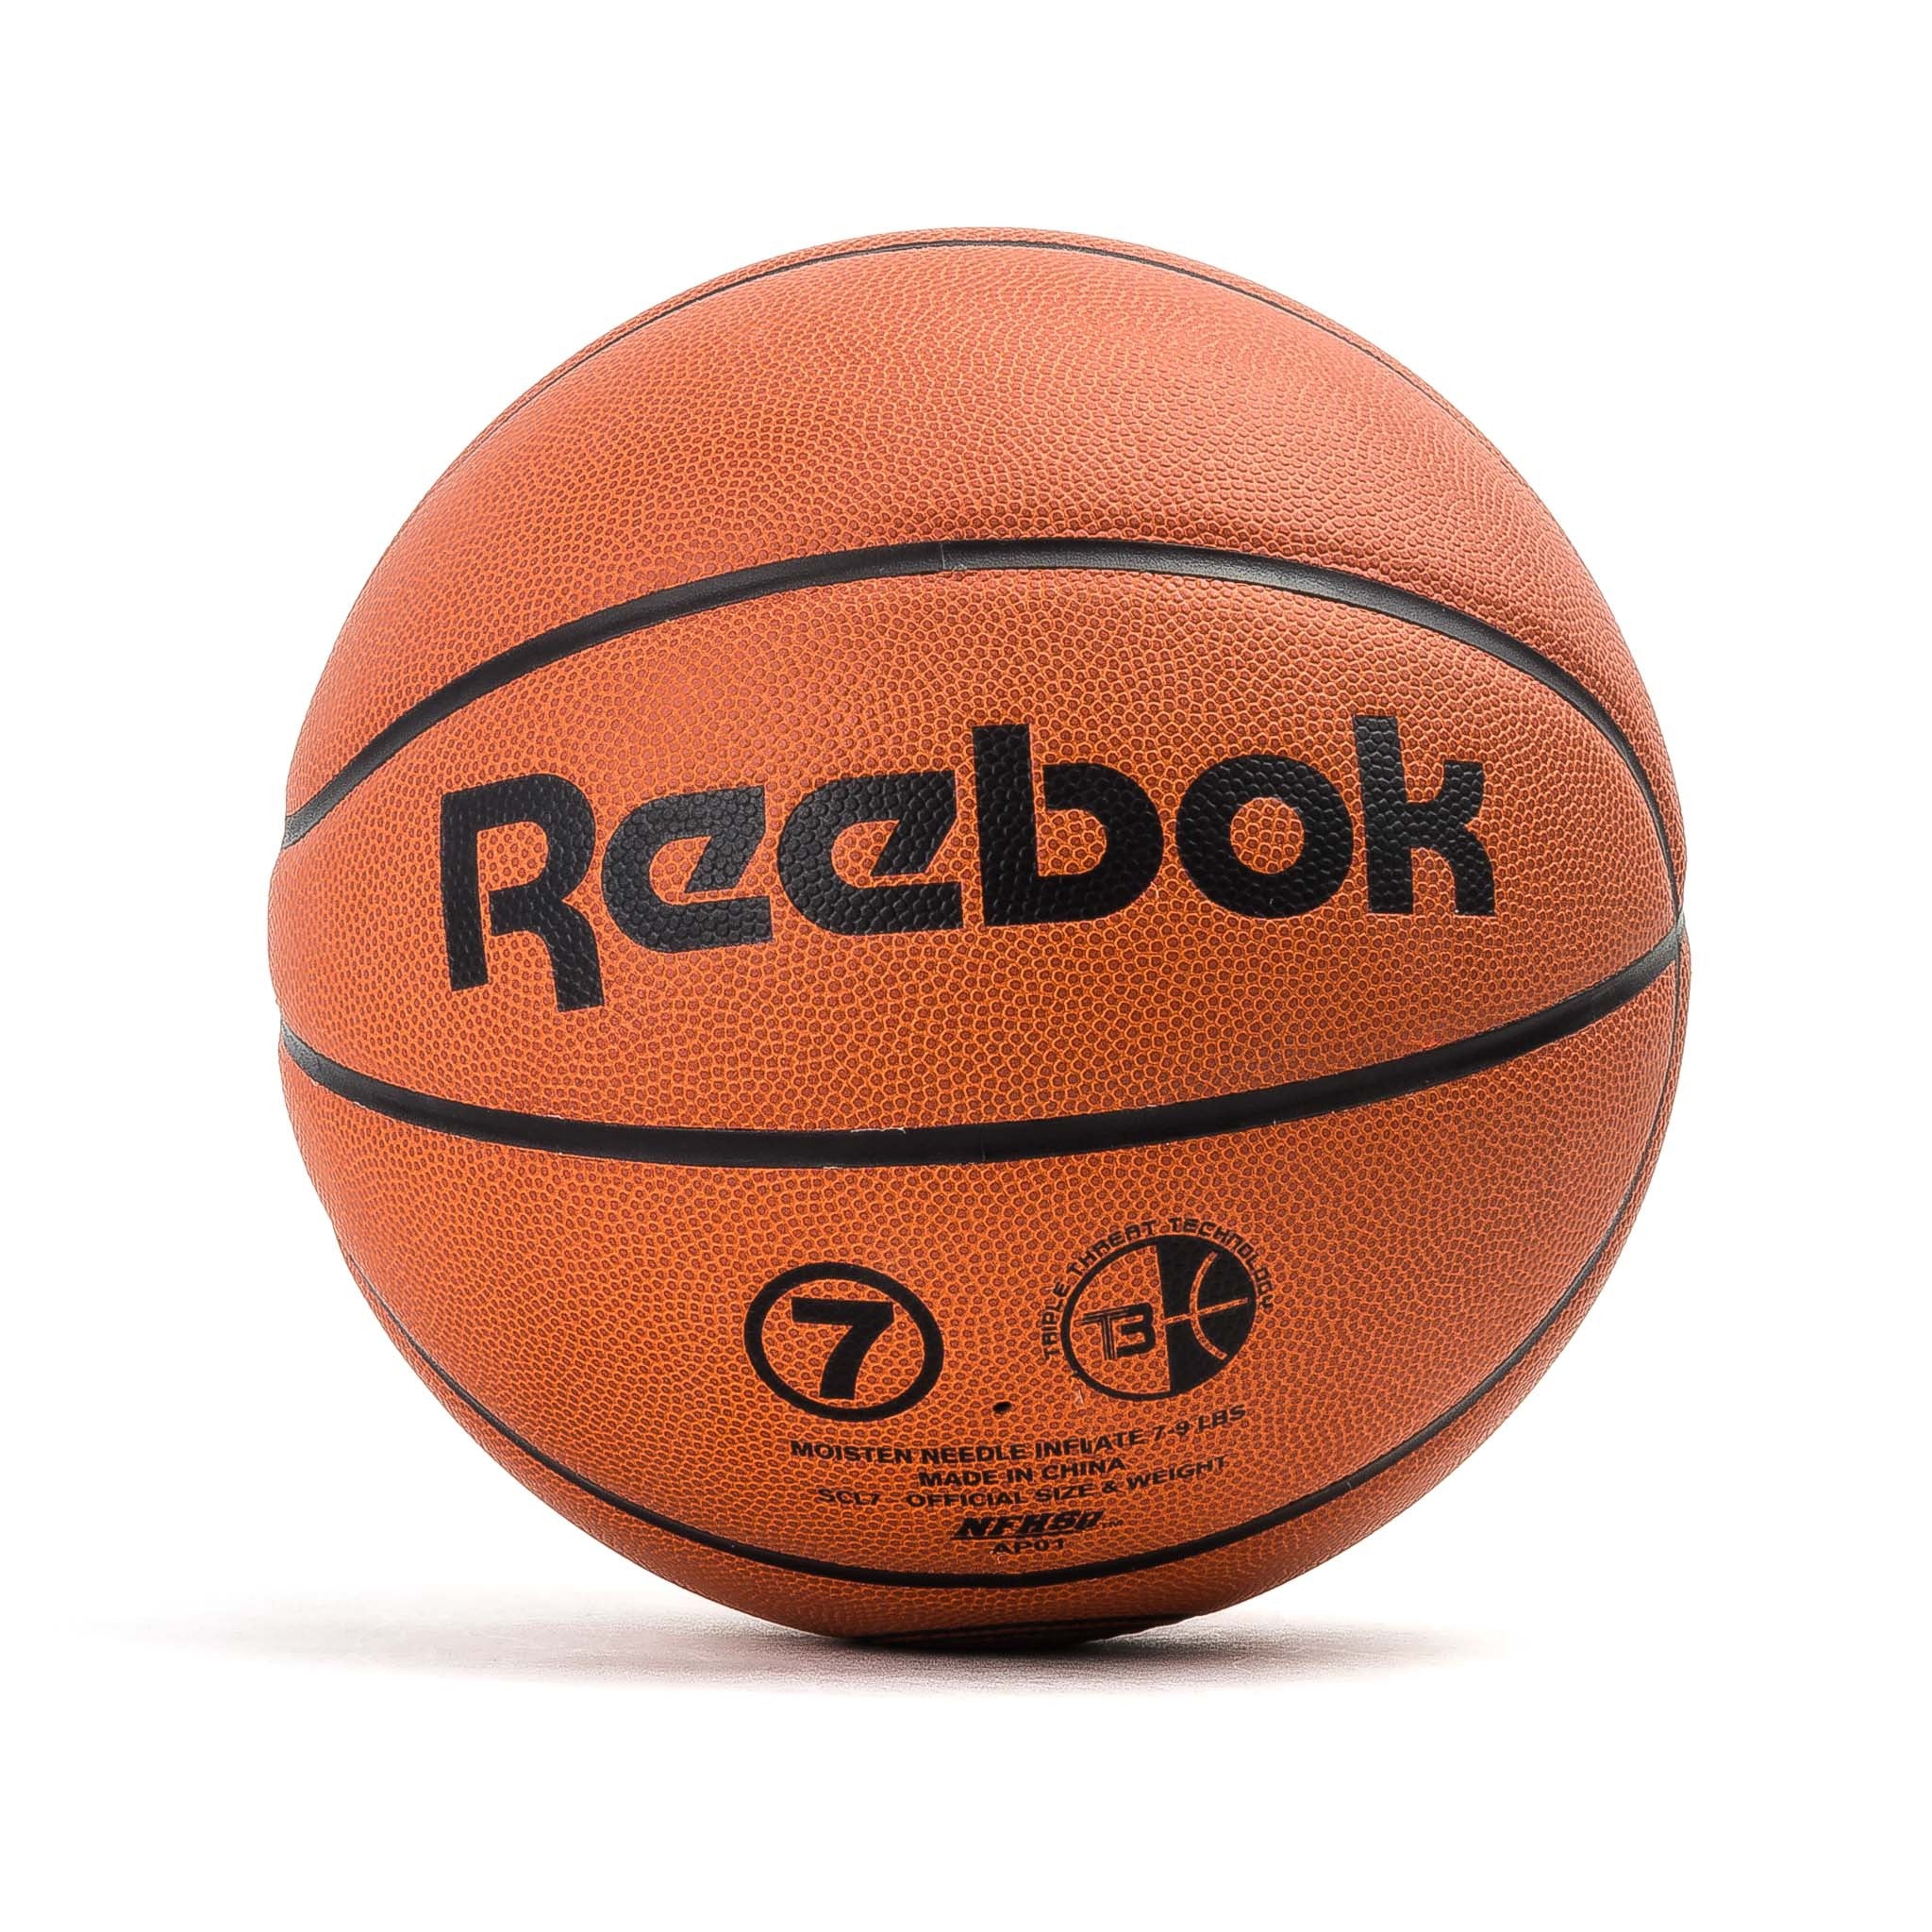 ShinShops x Reebok Basketball